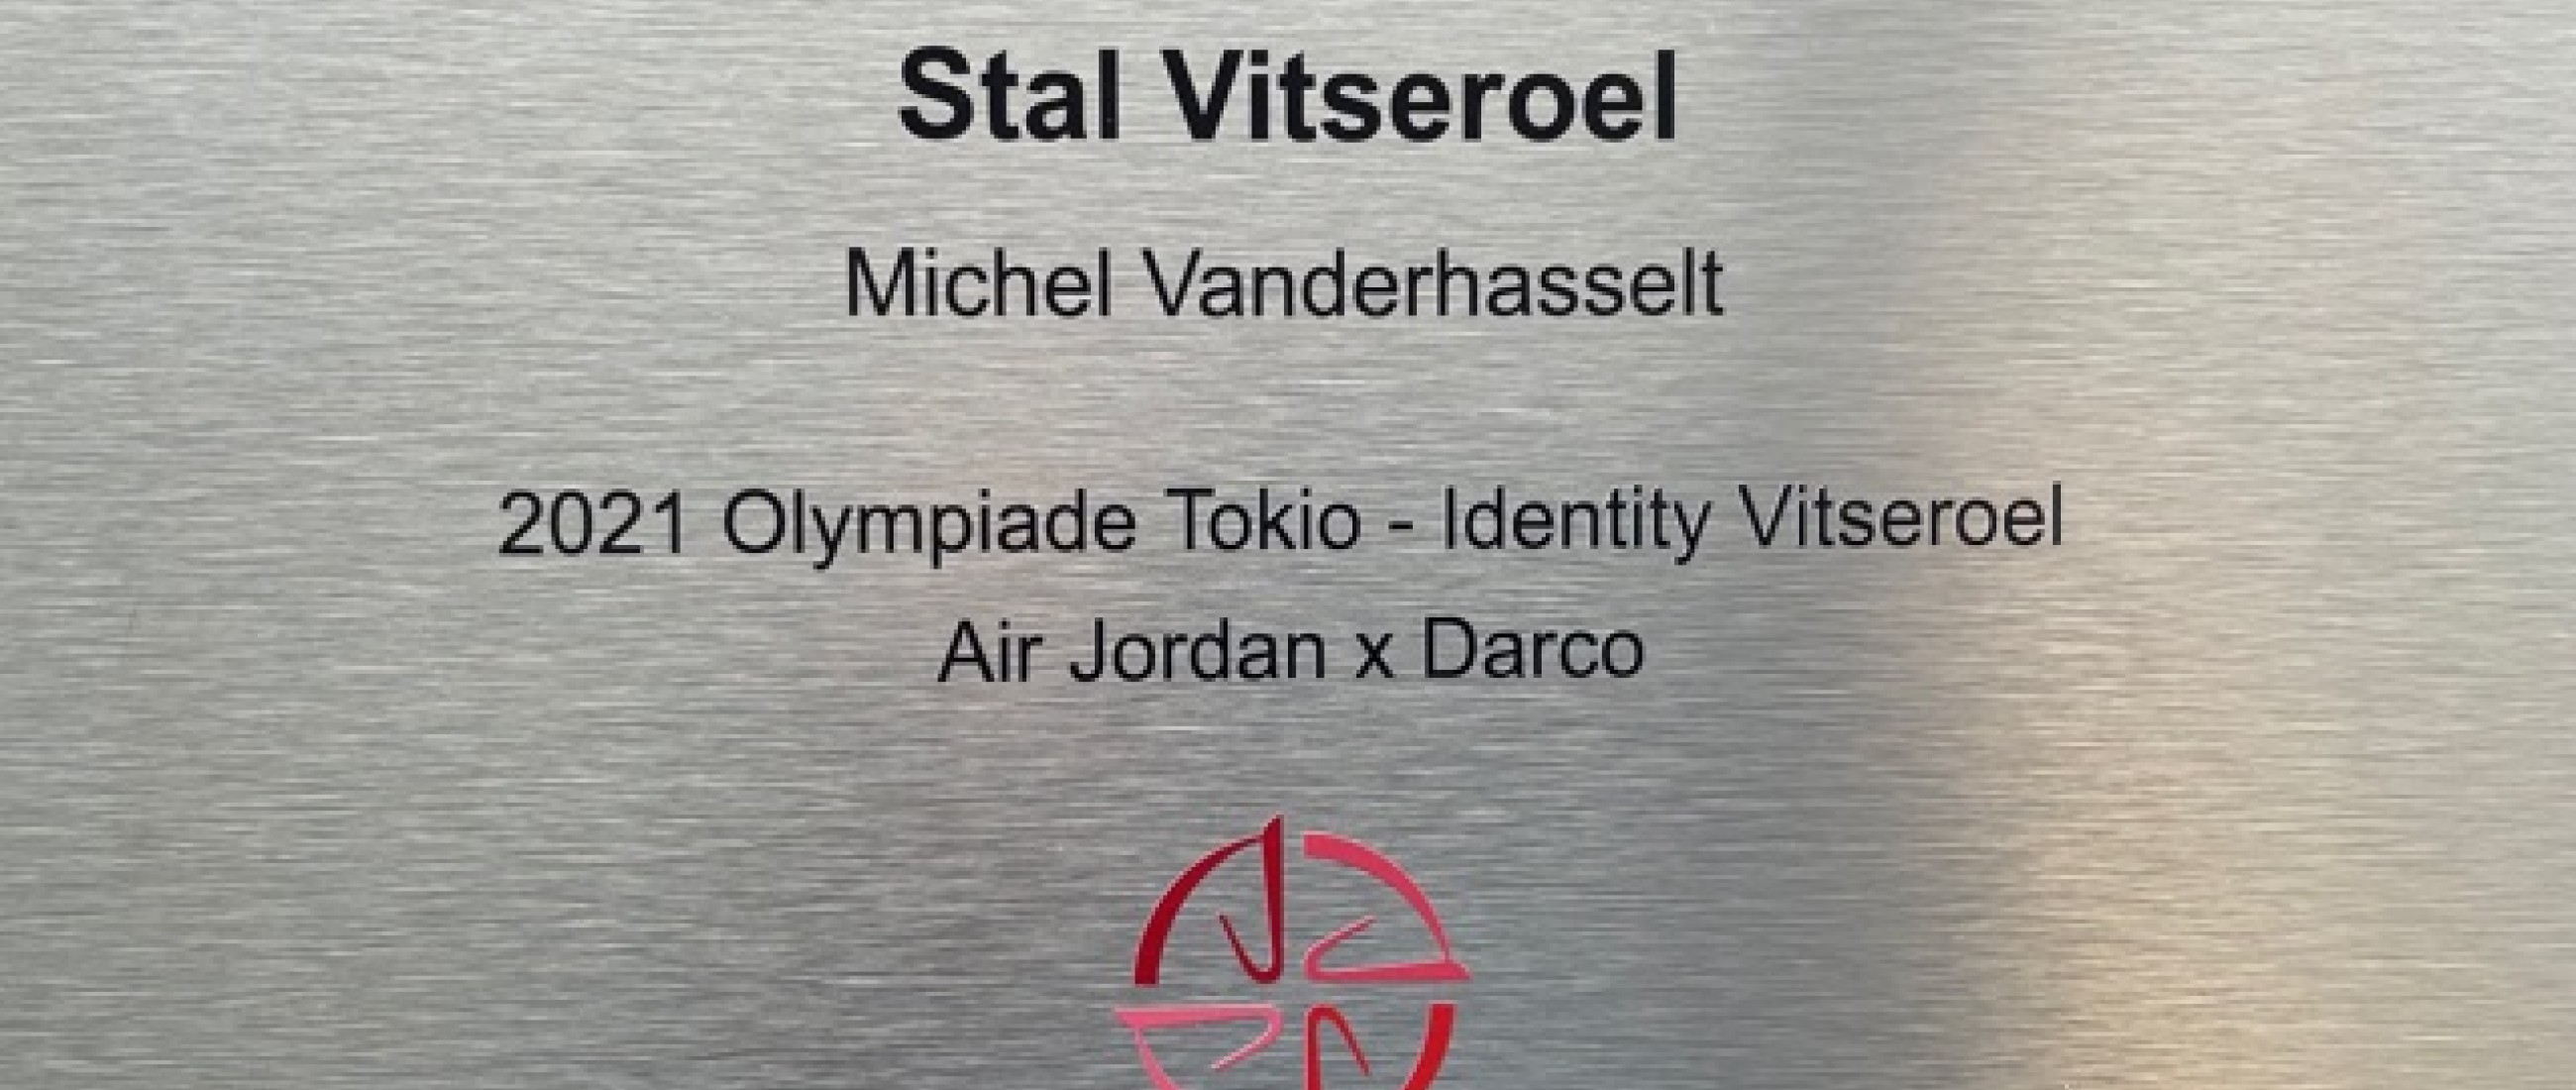 fier de recevoir cette plaque d'écurie olympique du studbook bwp merci Identity Vitseroel et BWP